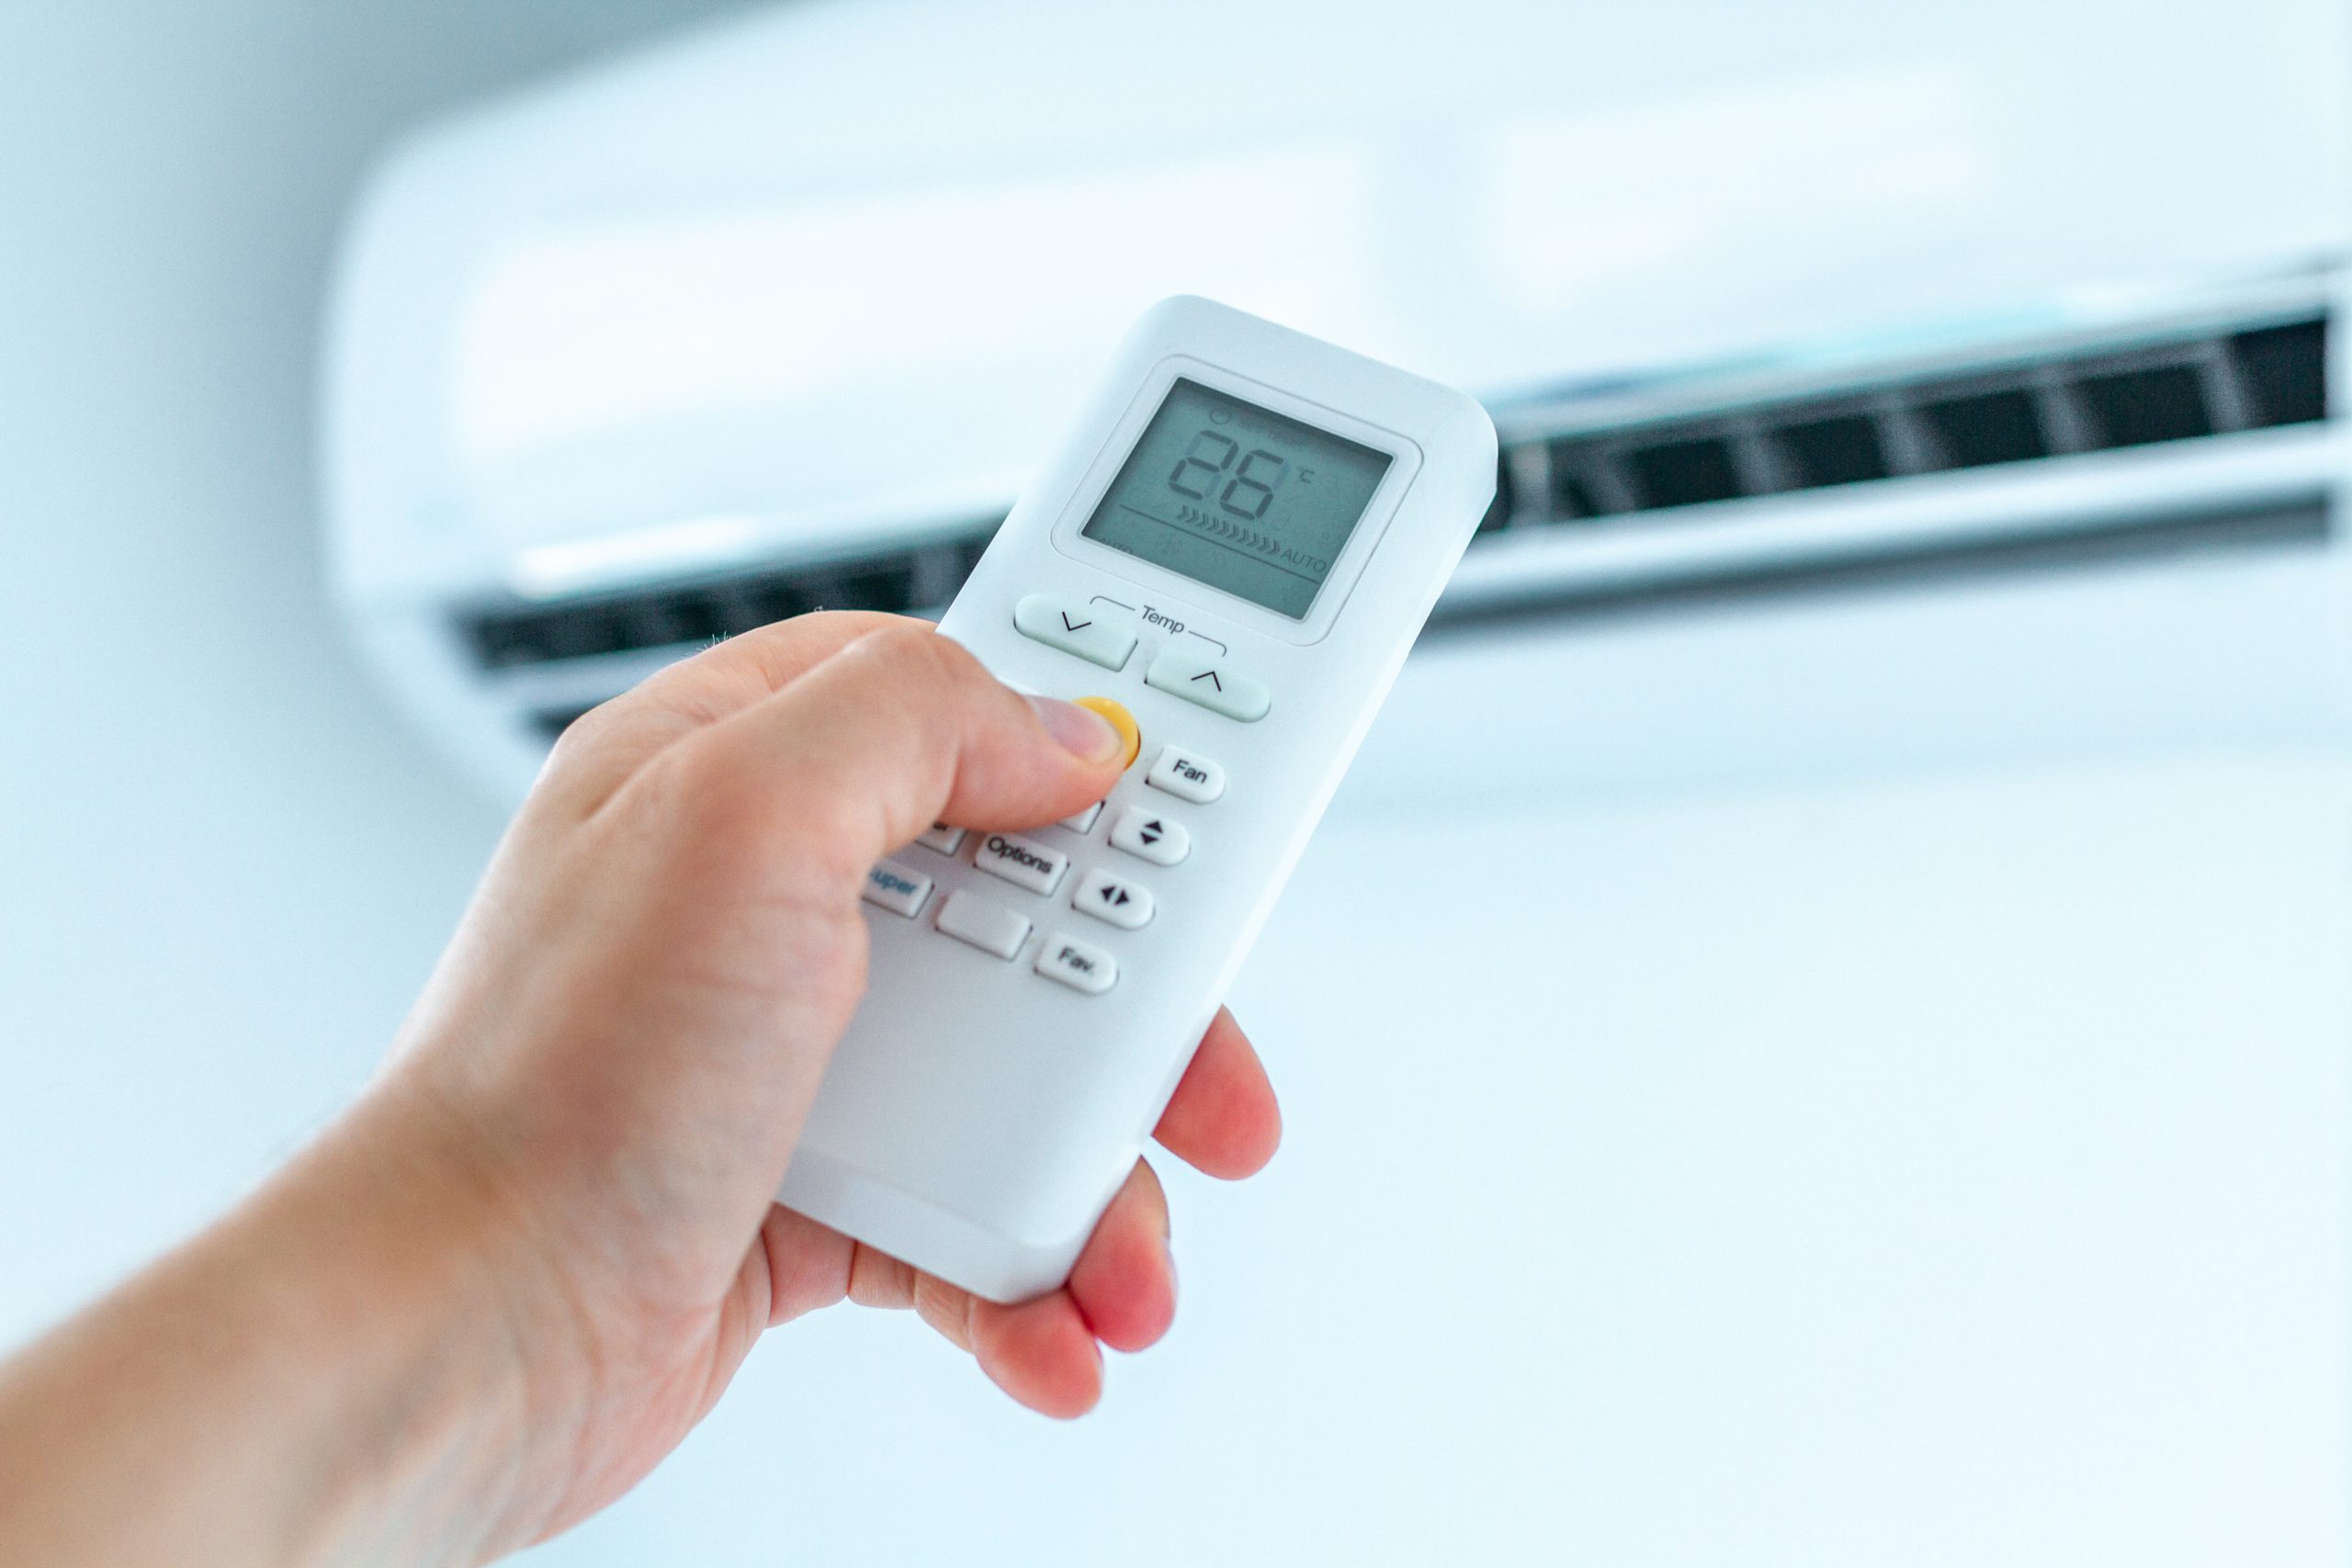  Uw huis verwarmen zonder gas te verbruiken?